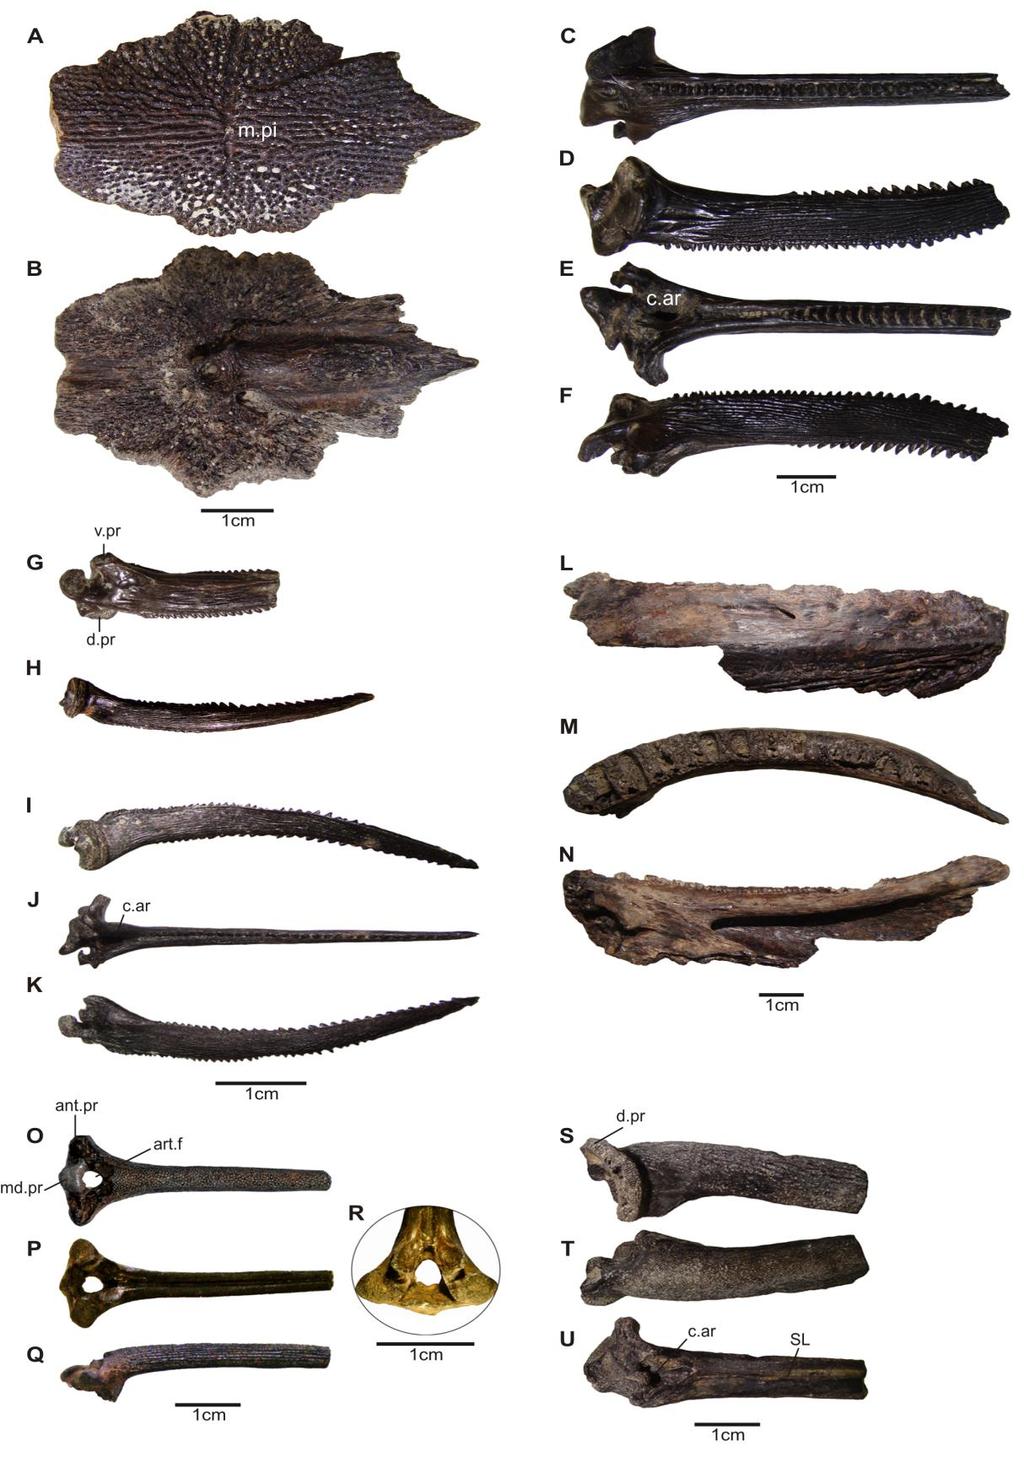 Figura 22. Peces fósiles de la localidad fosilífera río Salado, provincia de Santa Fe. Pterodoras granulosus MFA-PV 1574, supraoccipital, vista externa (A), vista interna (B).